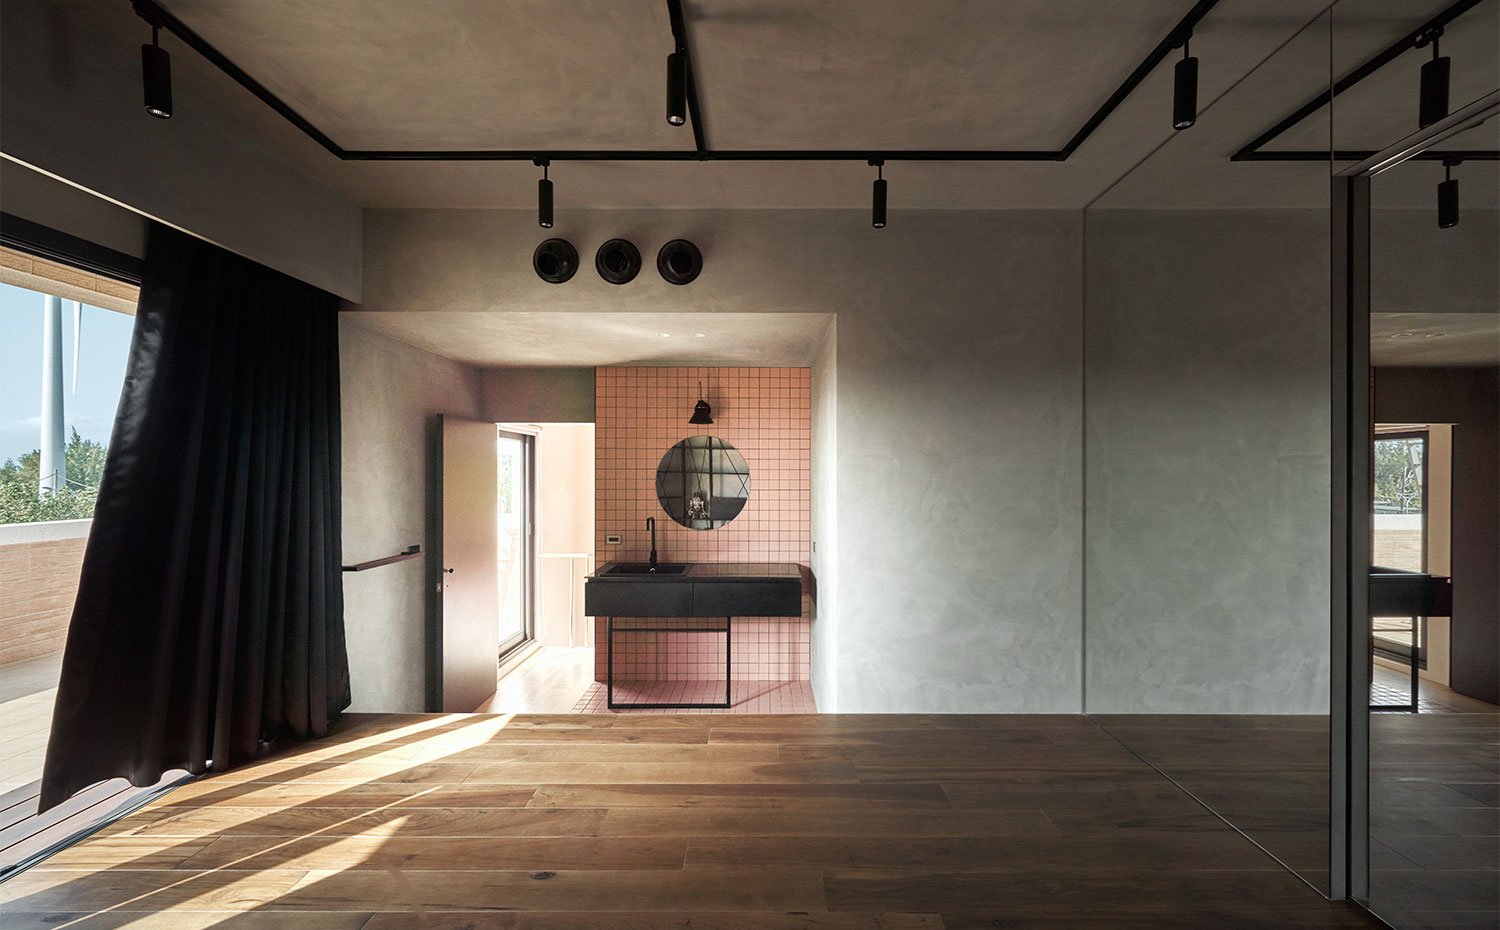 Amplia sala con suelo de madera, revestimiento en gris, tocador con pared revestida en rosa, mobiliario en negro